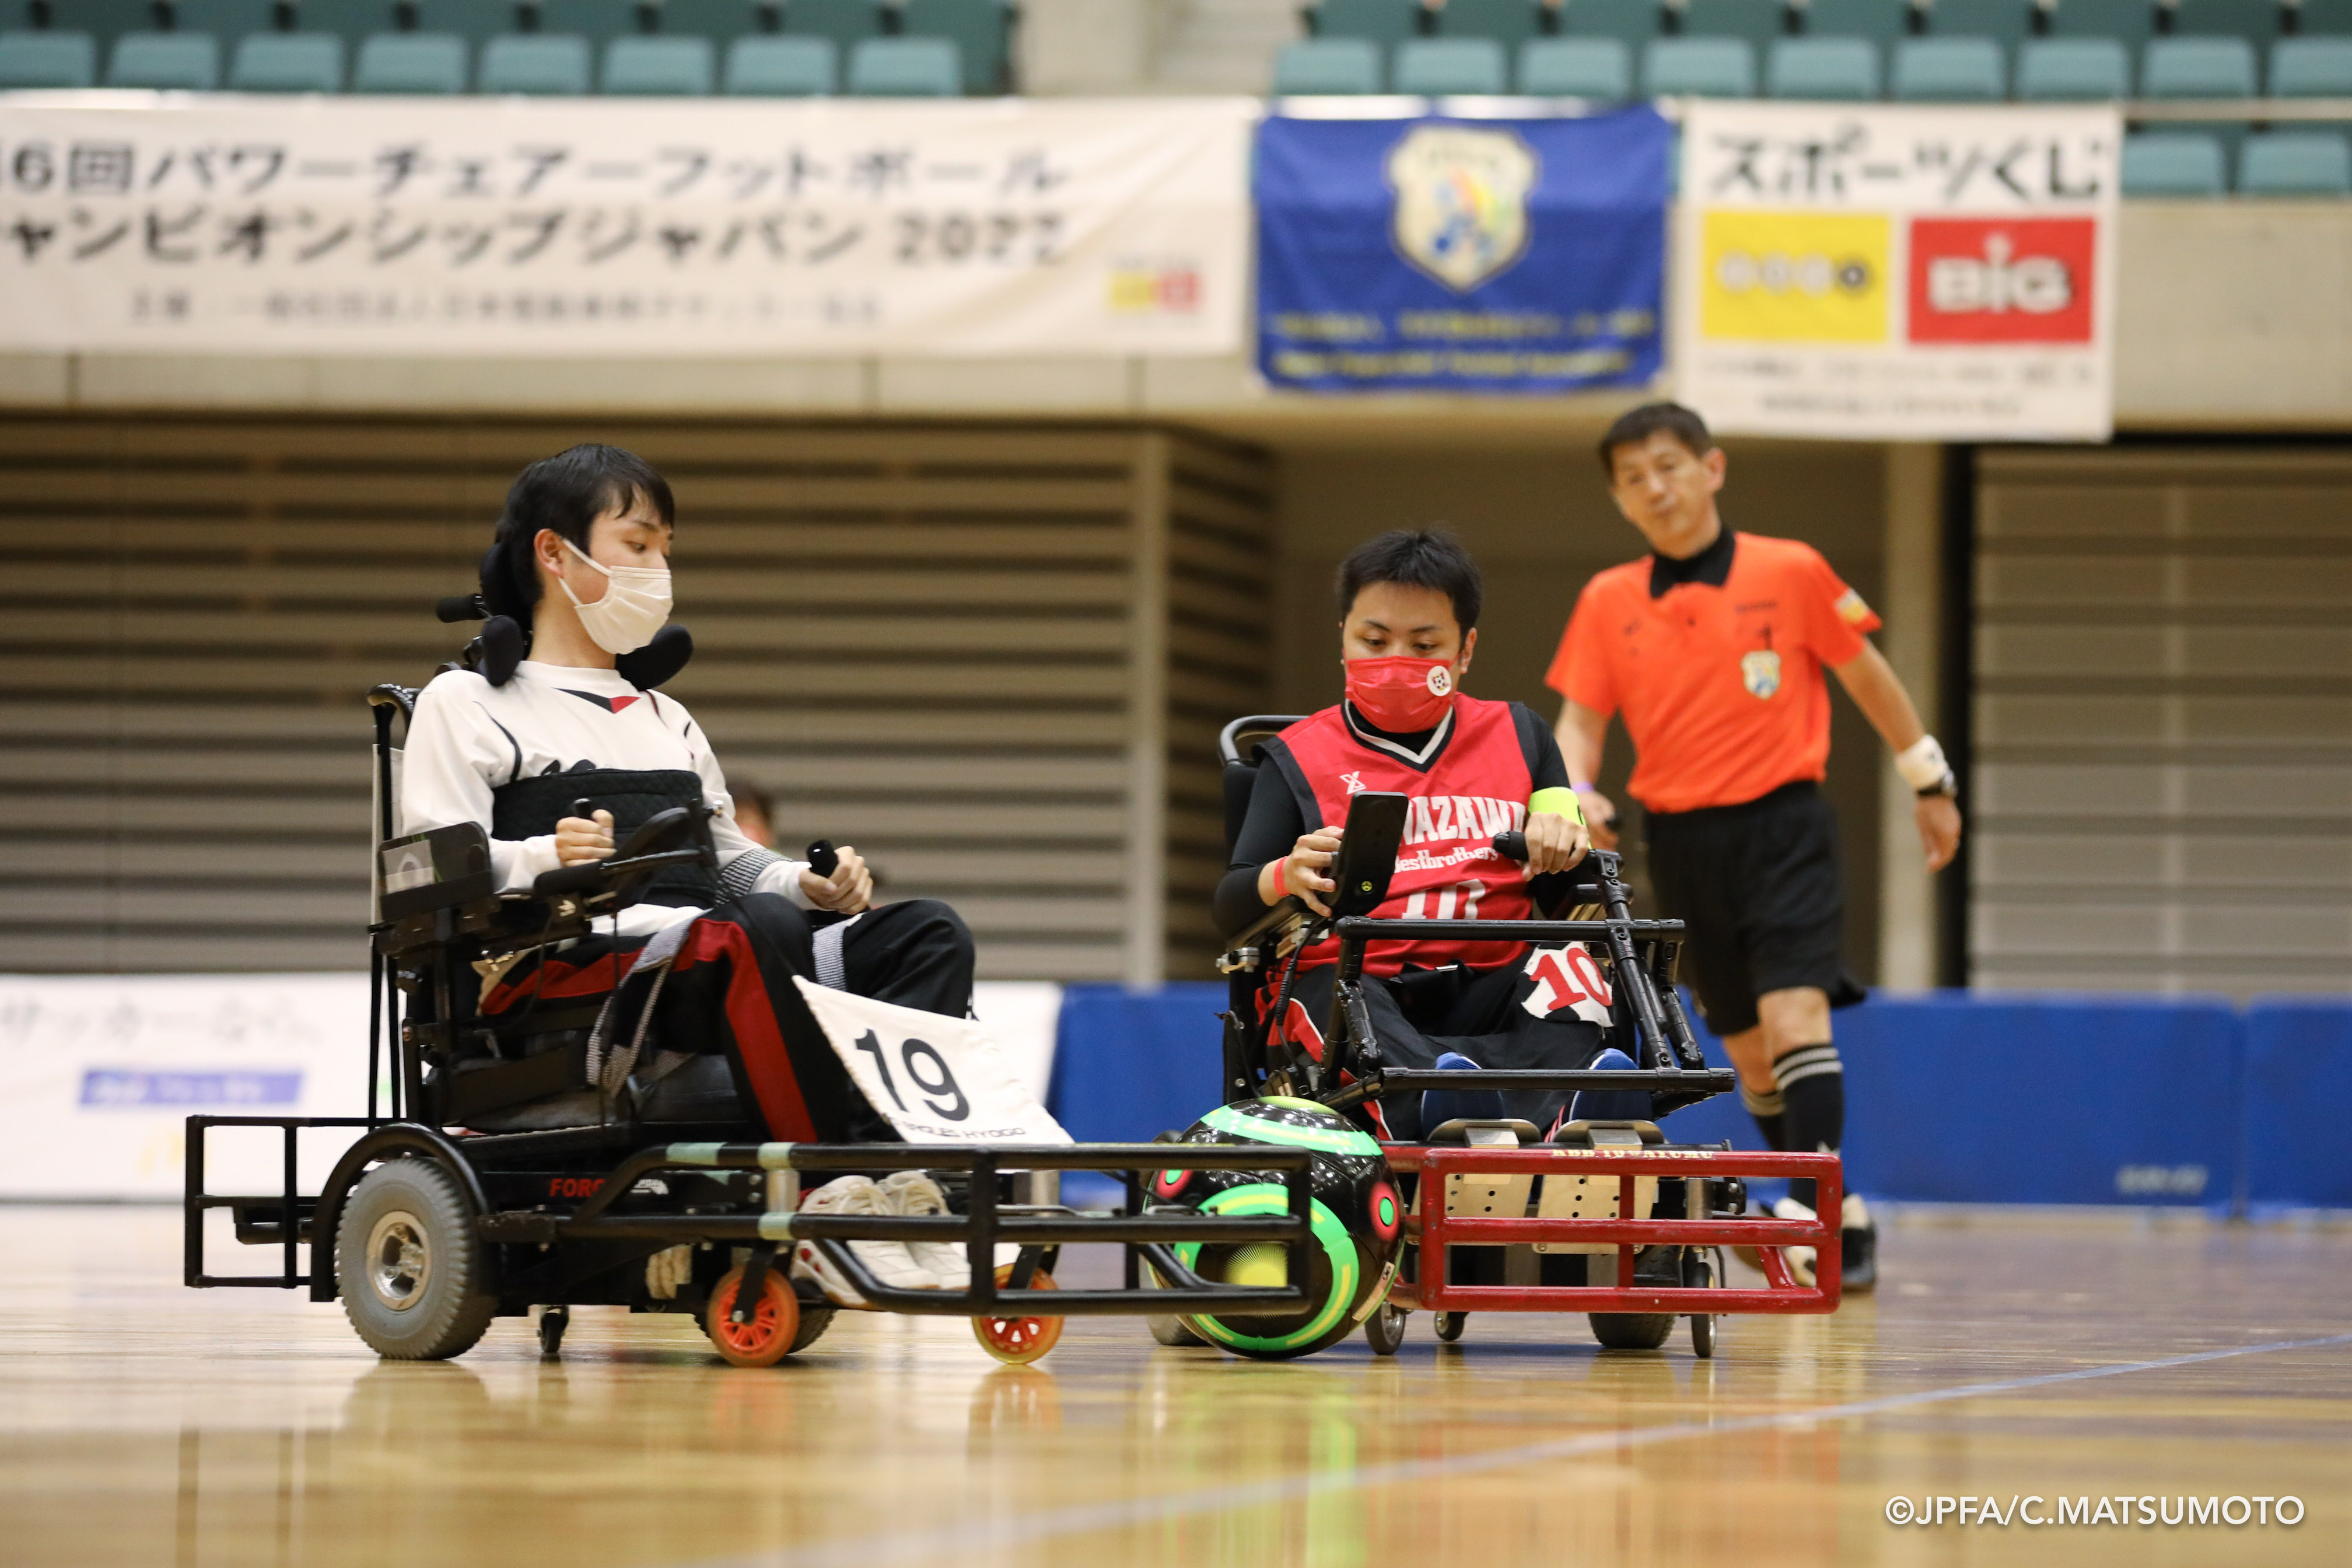 電動車椅子サッカーの選手2人がボールを取り合っている